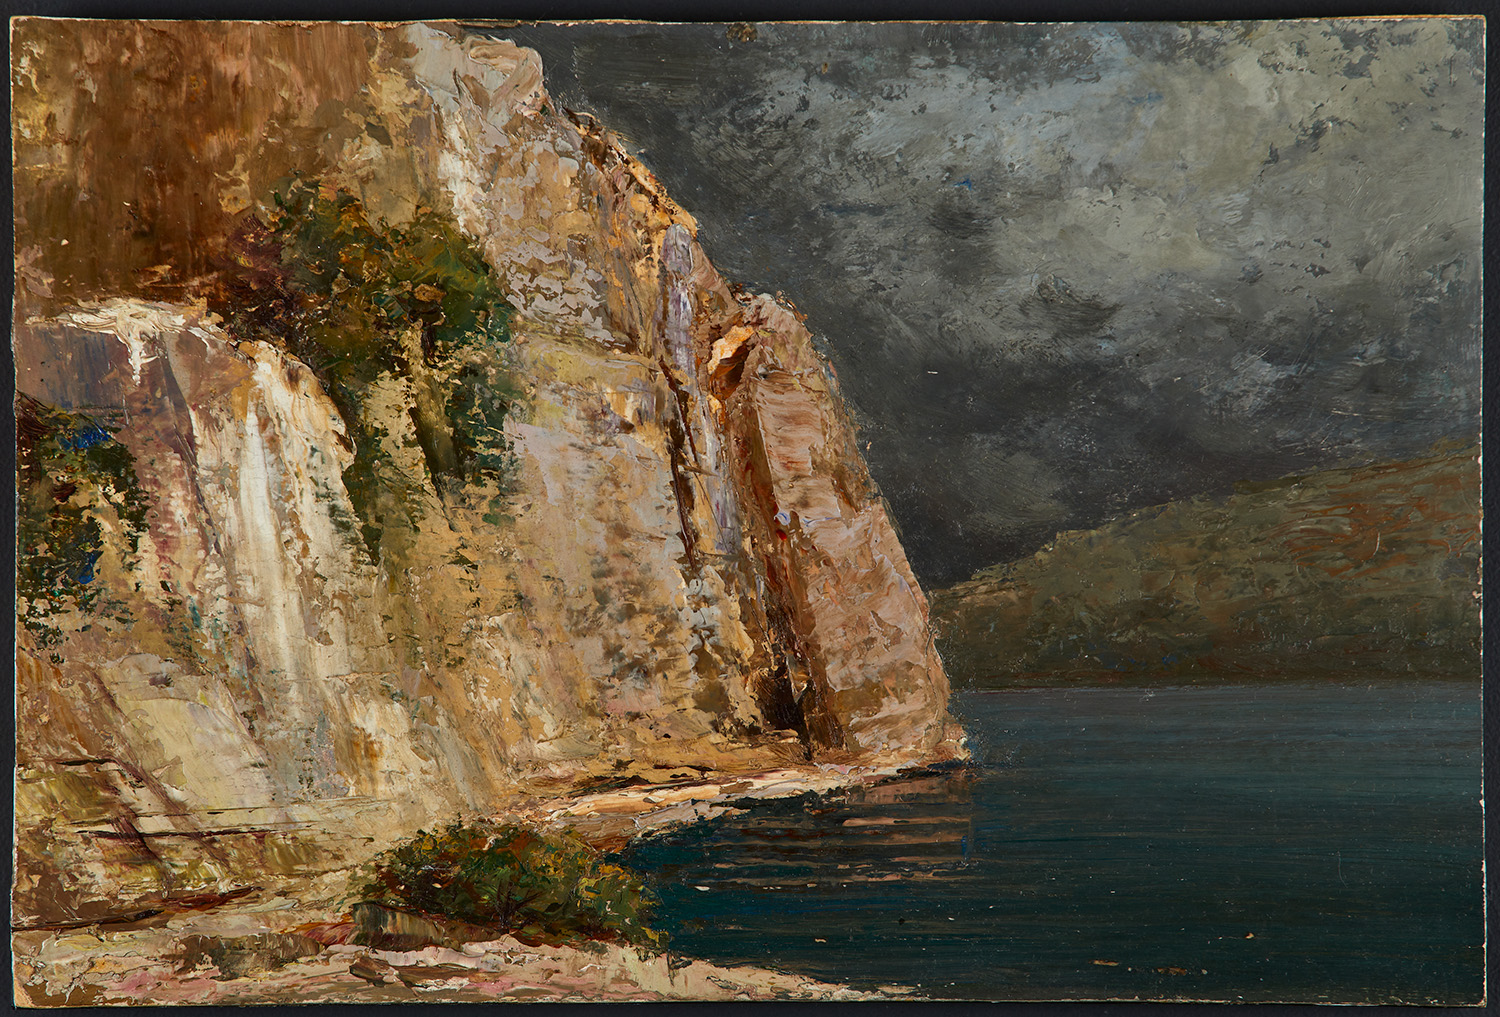 Rocce a picco sul lago in Svizzera di Gualtiero Baynes - Musei Macerata